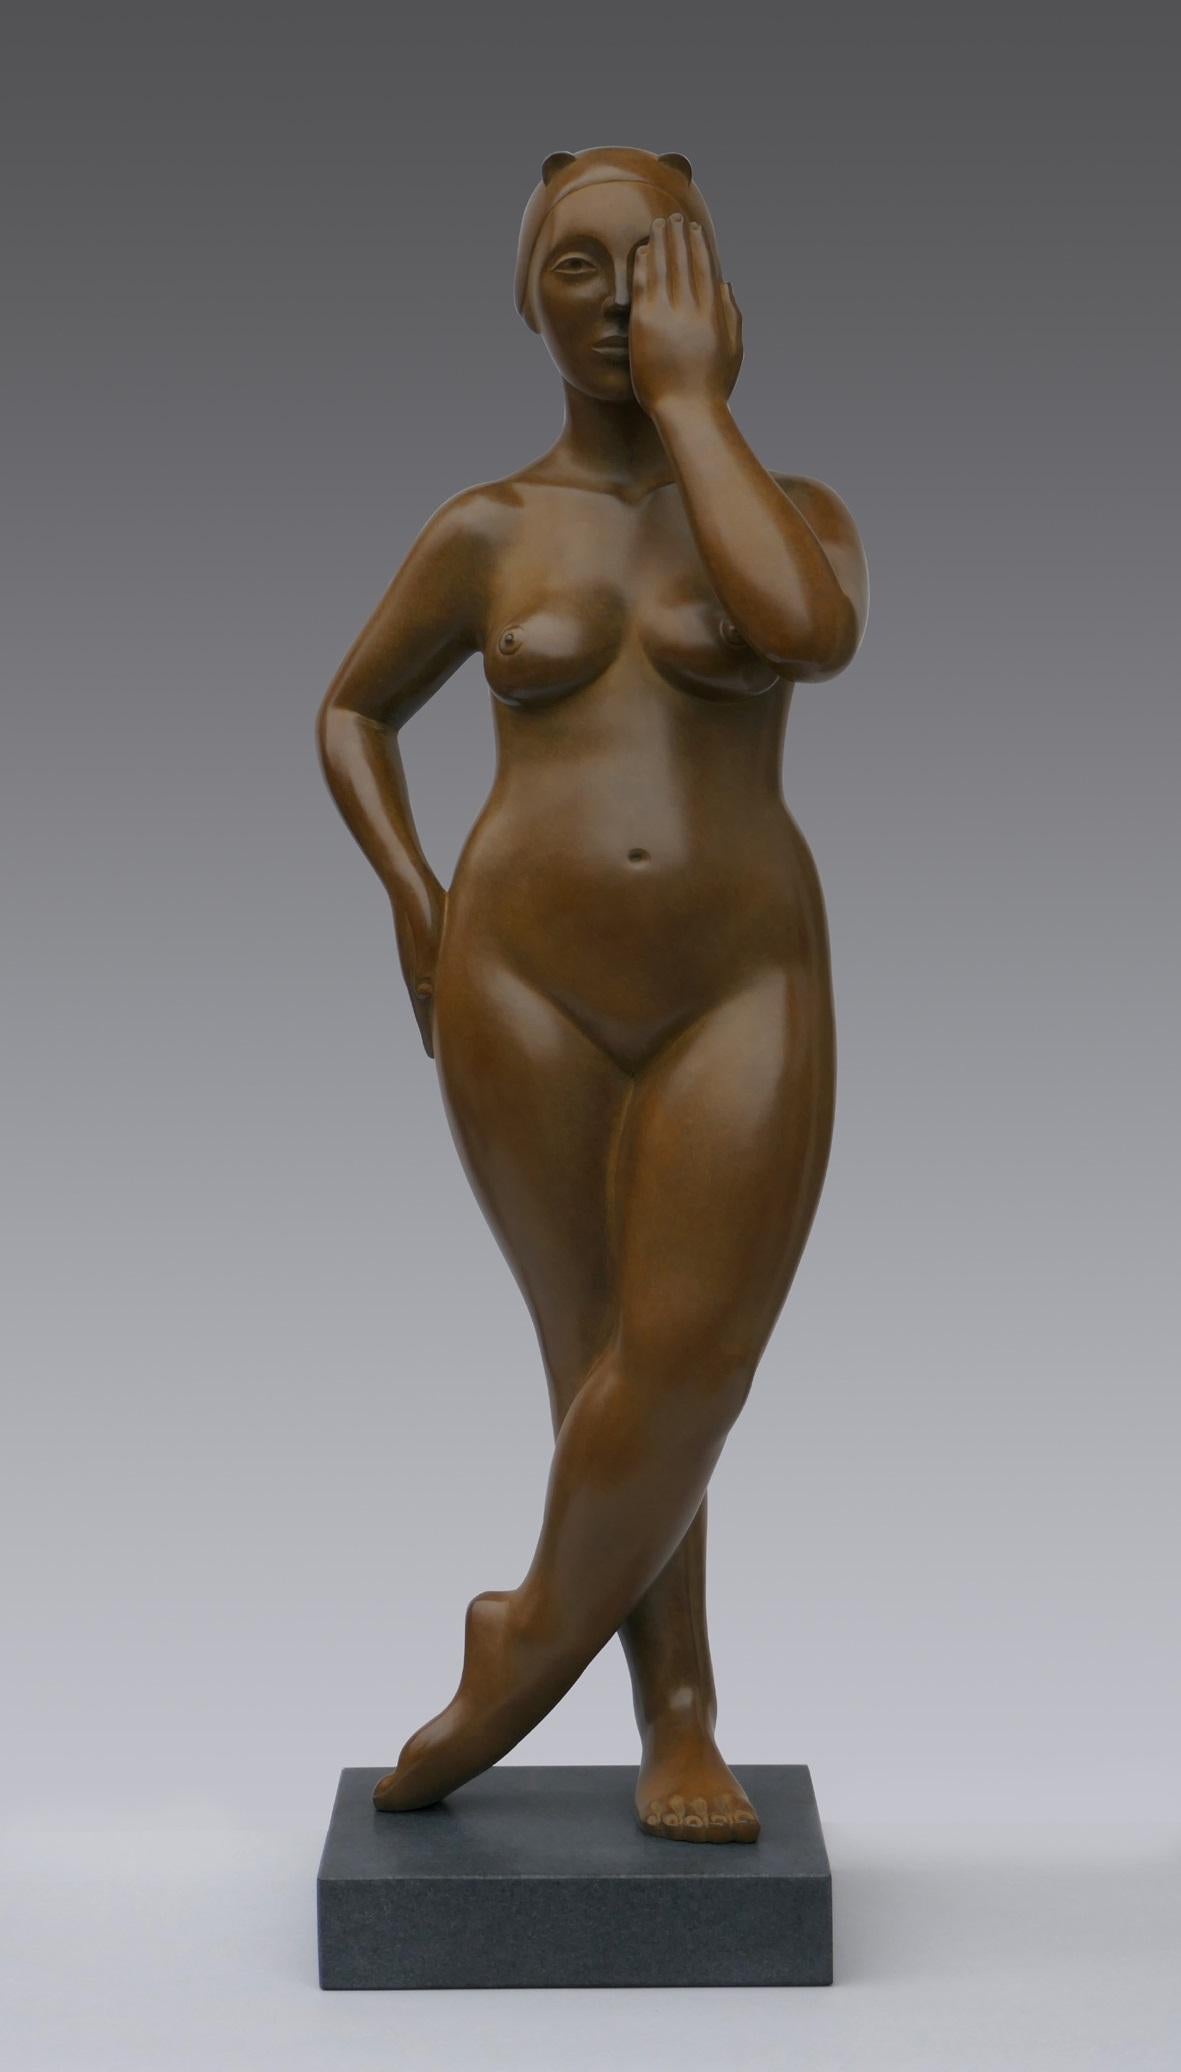 Verstecken und suchen Bronze-Skulptur Nude Weiblich Zeitgenössisch
Die Statuen von Erwin Meijer tragen eine erkennbare, persönliche Handschrift.
Sie atmen die Atmosphäre eines erzählenden Gedichts, in dem der Leser nicht nur dem Künstler, sondern